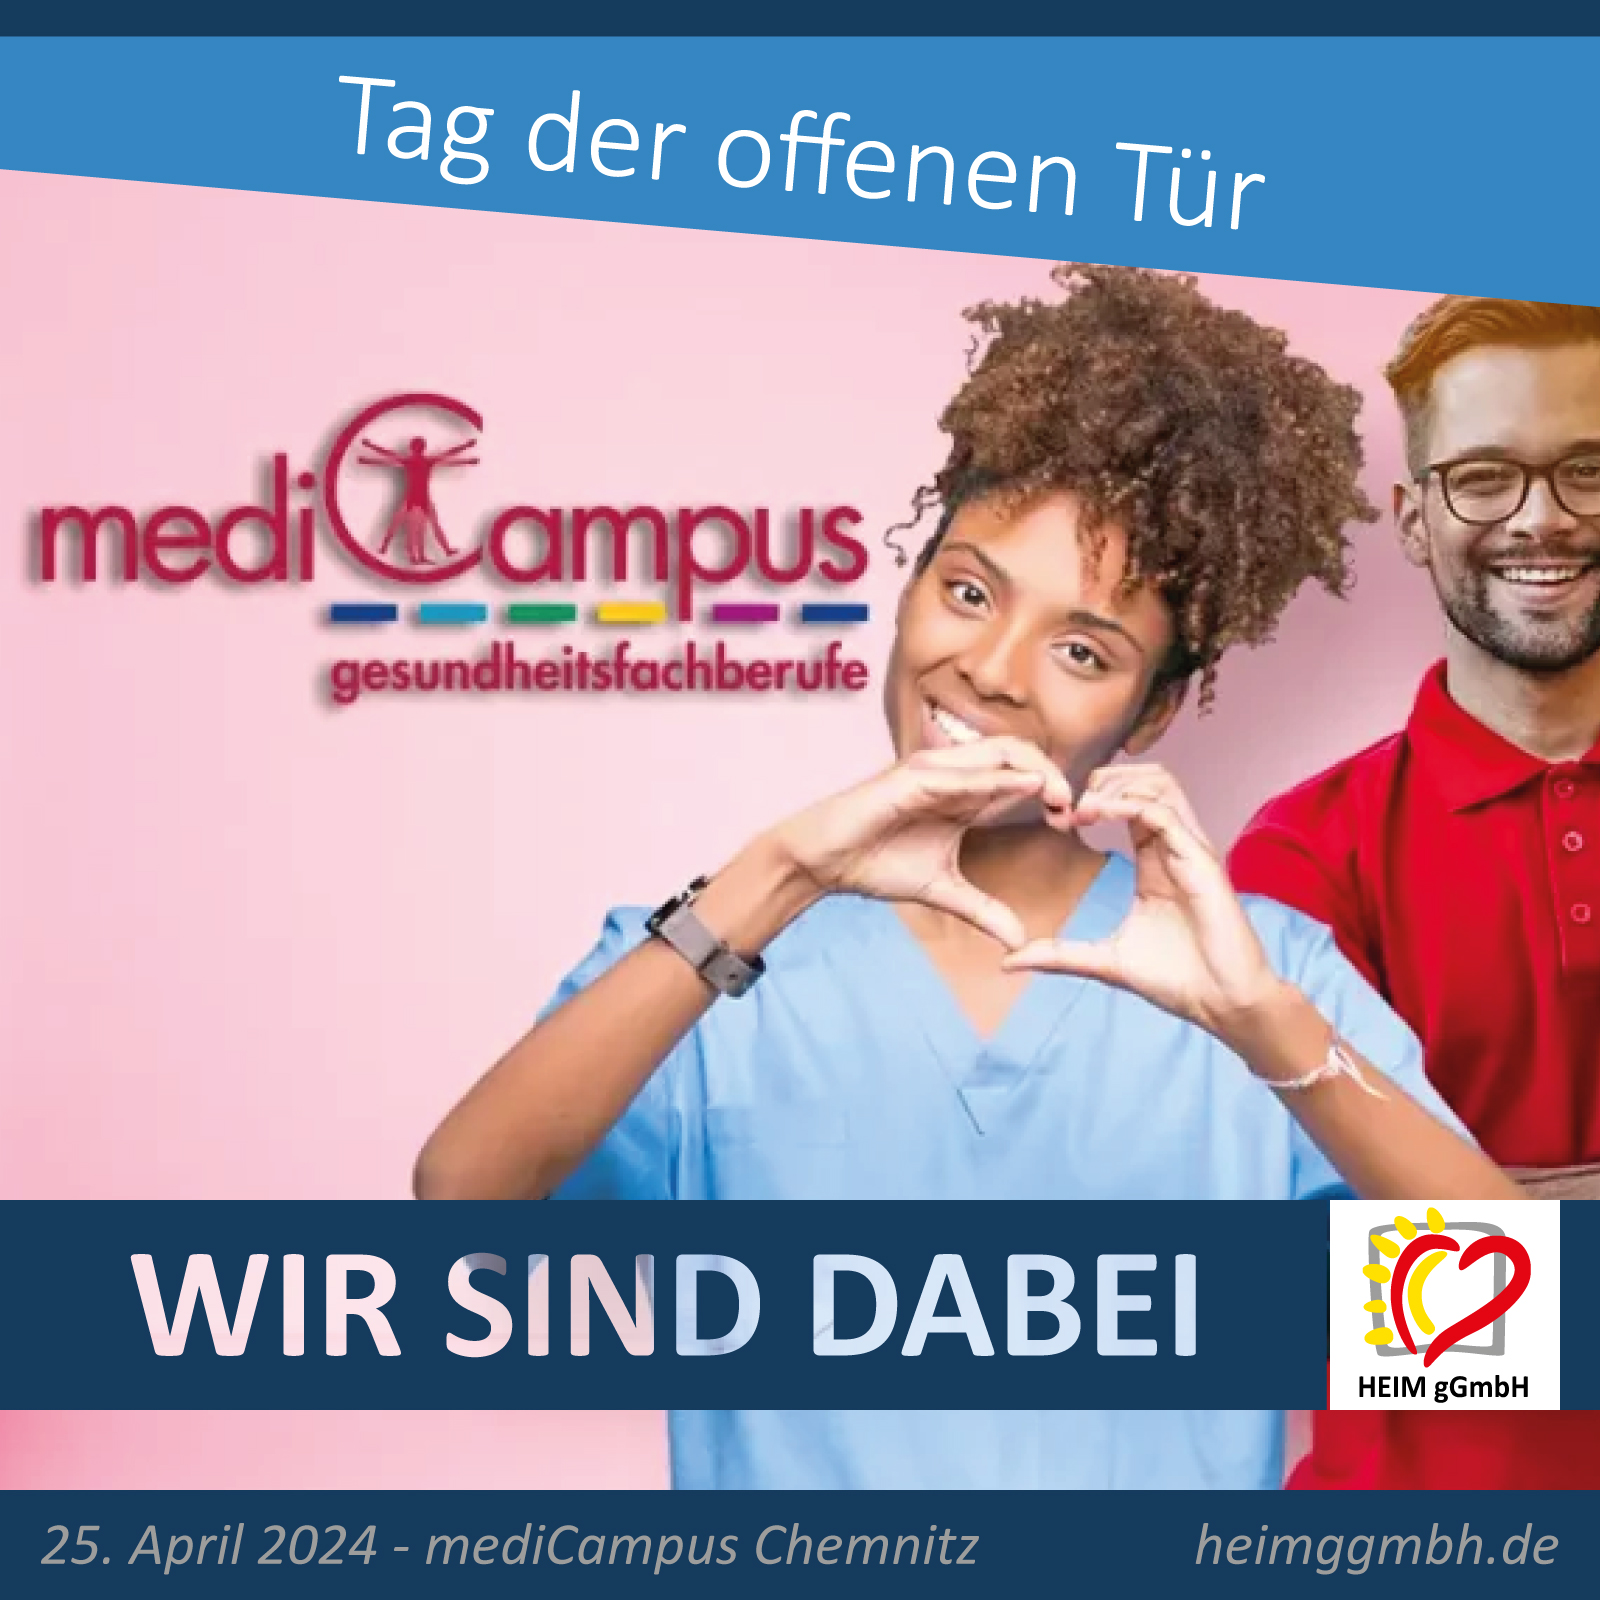 Die HEIM gemeinnützige GmbH beim Tag der offenen Tür bei mediCampus Chemnitz informiert über Ausbildungsmöglichkeiten